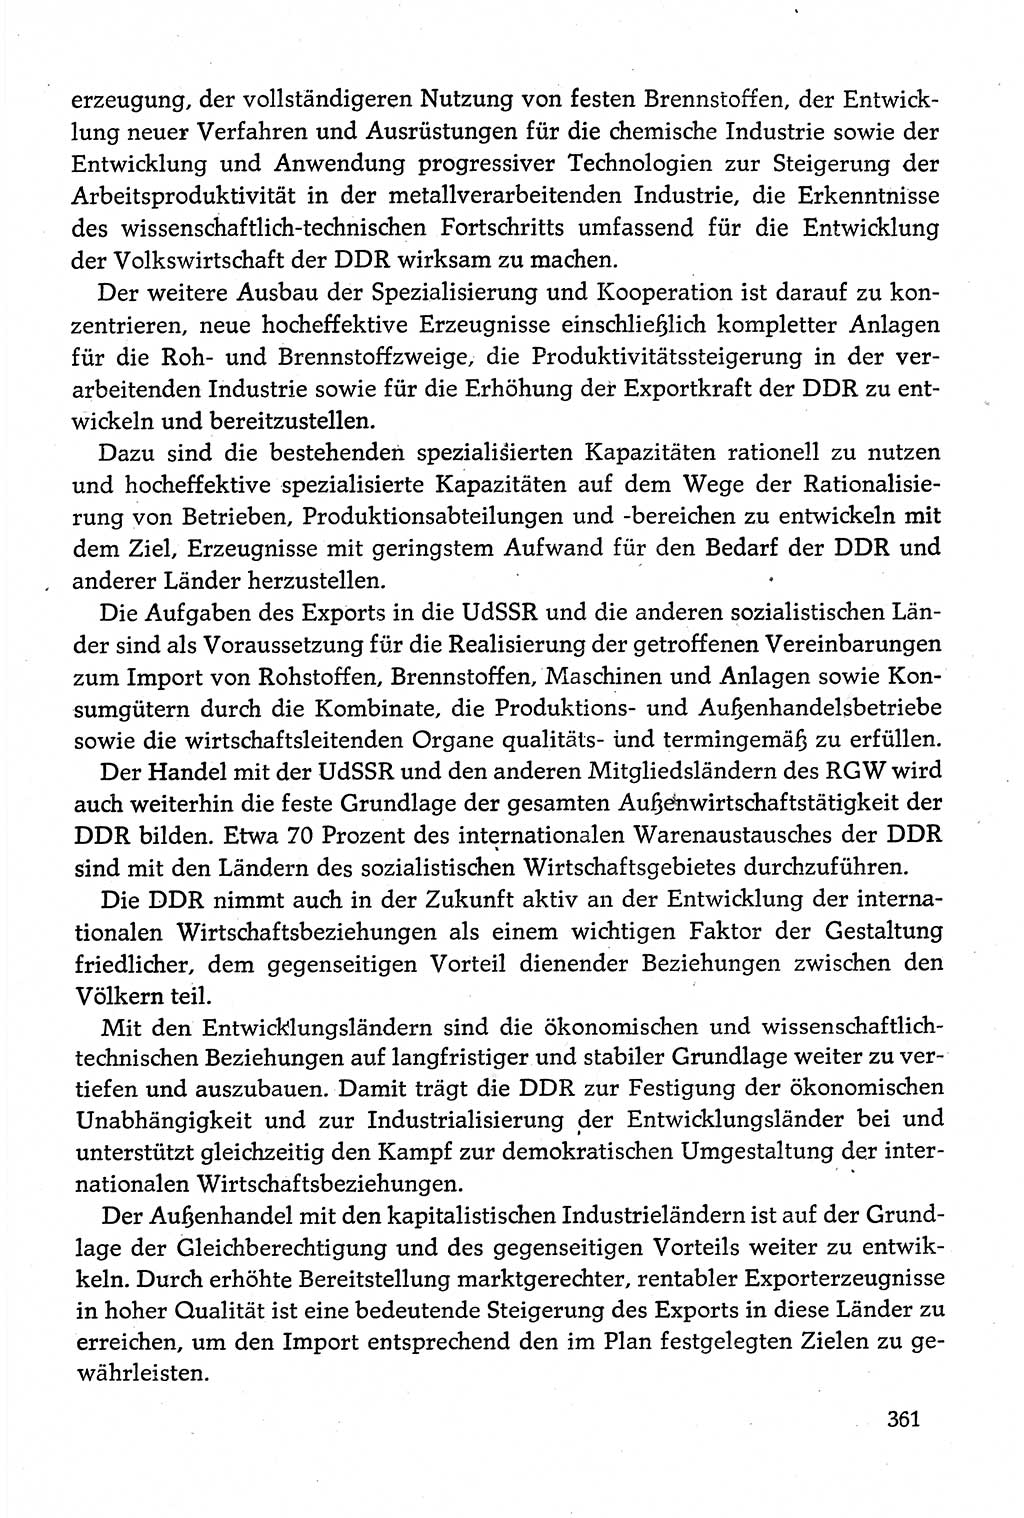 Dokumente der Sozialistischen Einheitspartei Deutschlands (SED) [Deutsche Demokratische Republik (DDR)] 1980-1981, Seite 361 (Dok. SED DDR 1980-1981, S. 361)